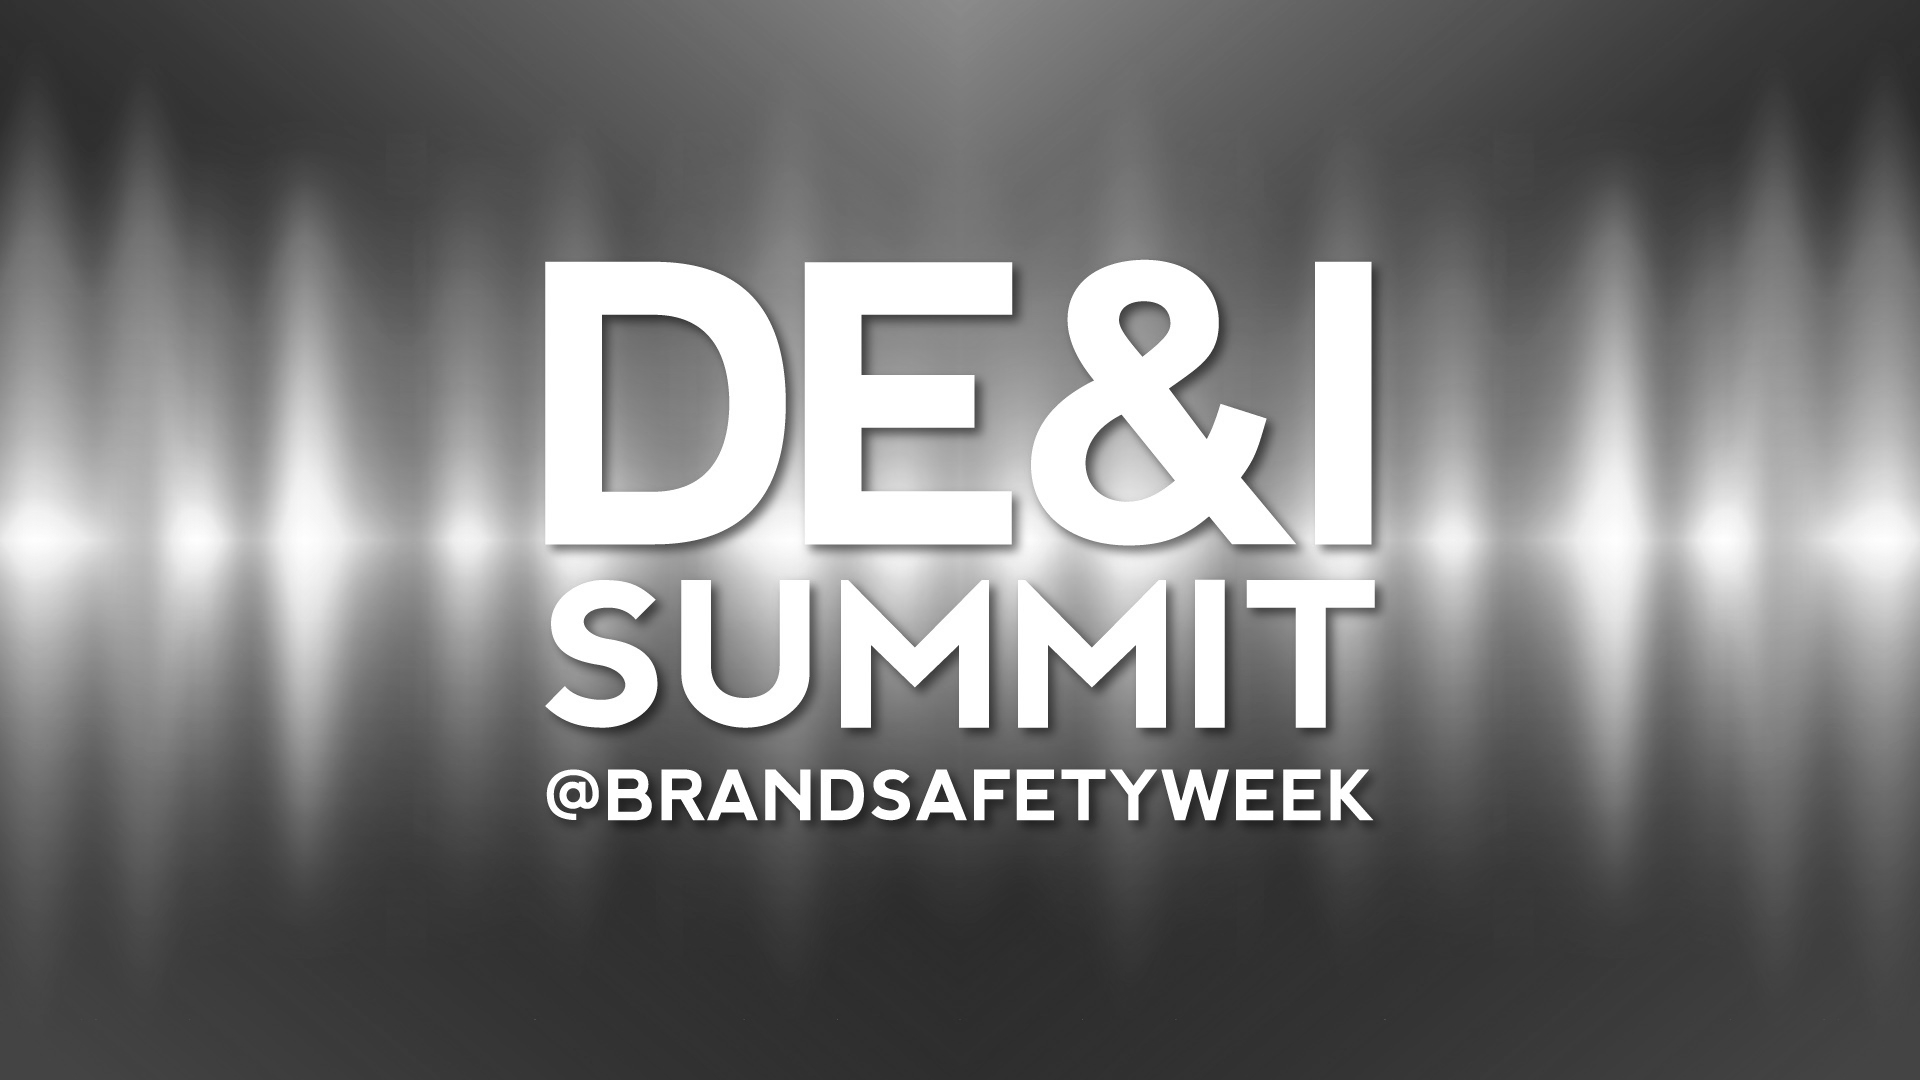 Brand Safety Week Announces its Inaugural DE&I Summit @BrandSafetyWeek Activation